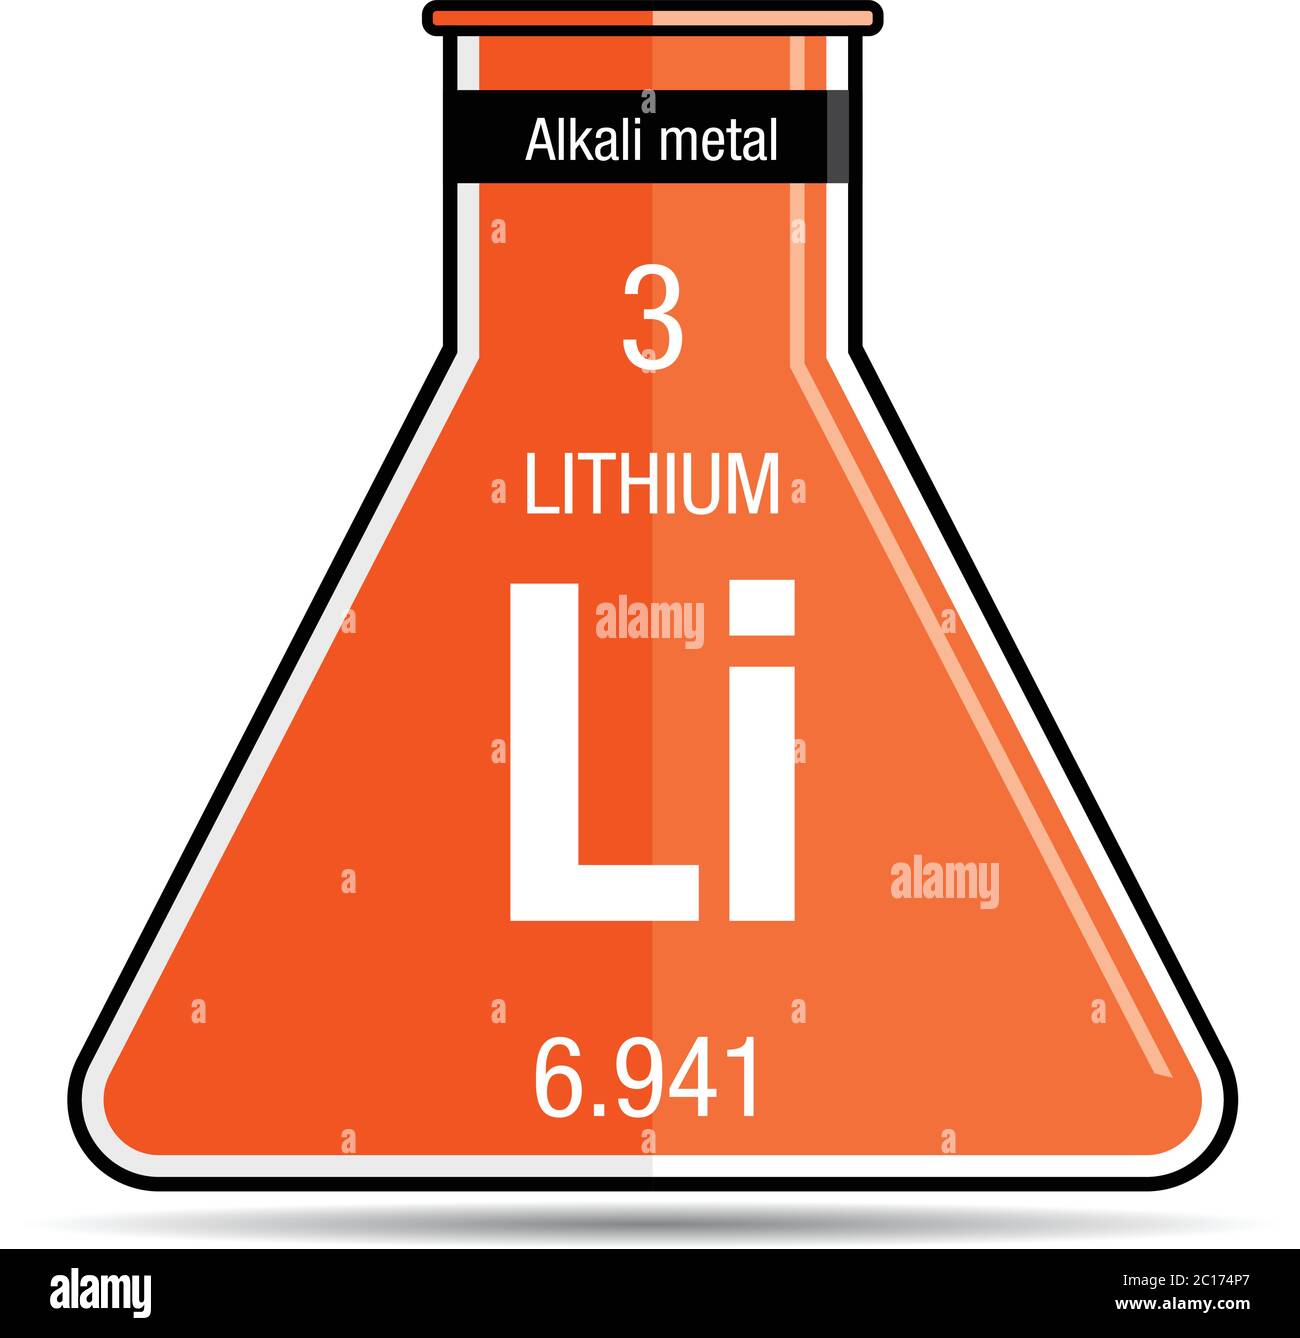 Symbole de lithium sur flacon de produit chimique. Élément numéro 3 du tableau périodique des éléments - Chimie Illustration de Vecteur